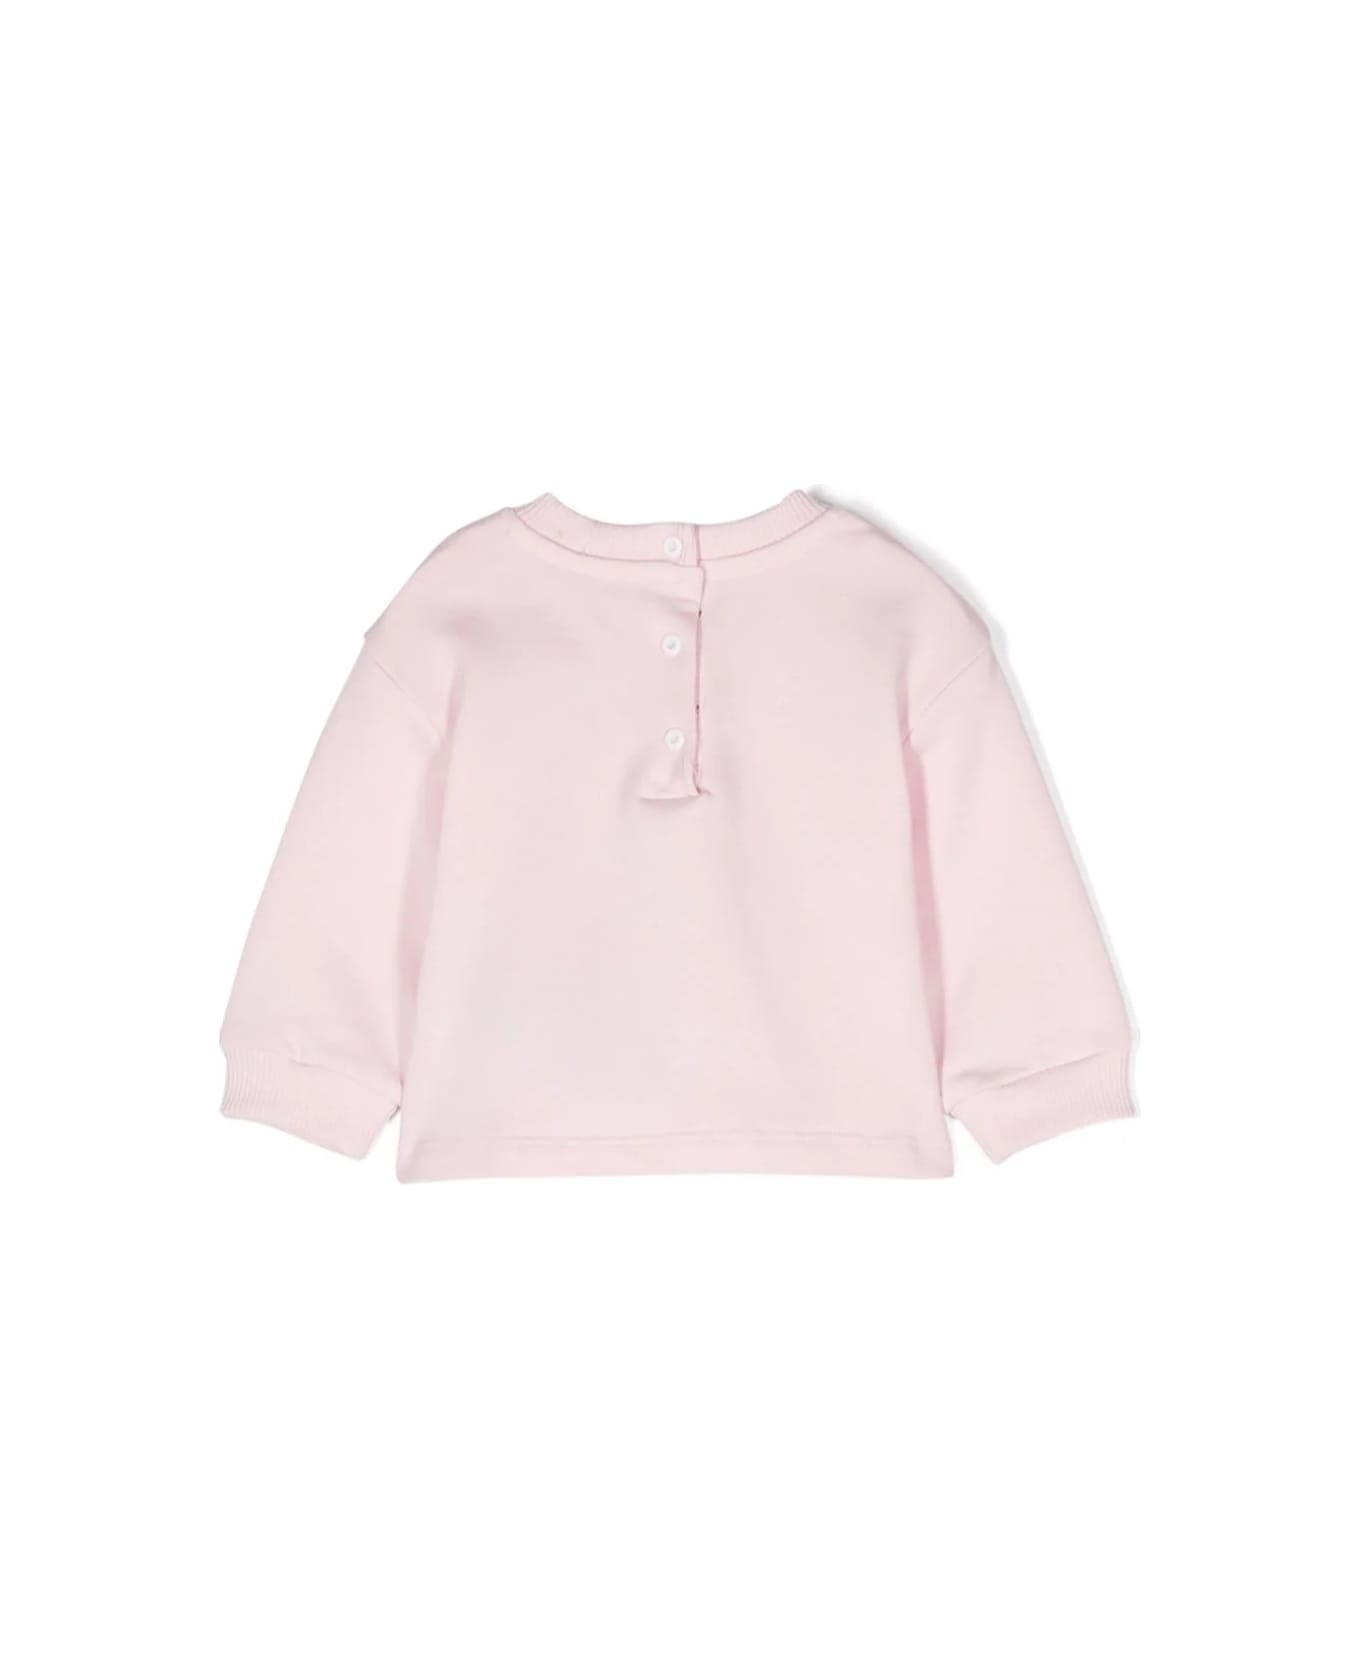 Balmain Sweatshirt With Embroidery - Pink